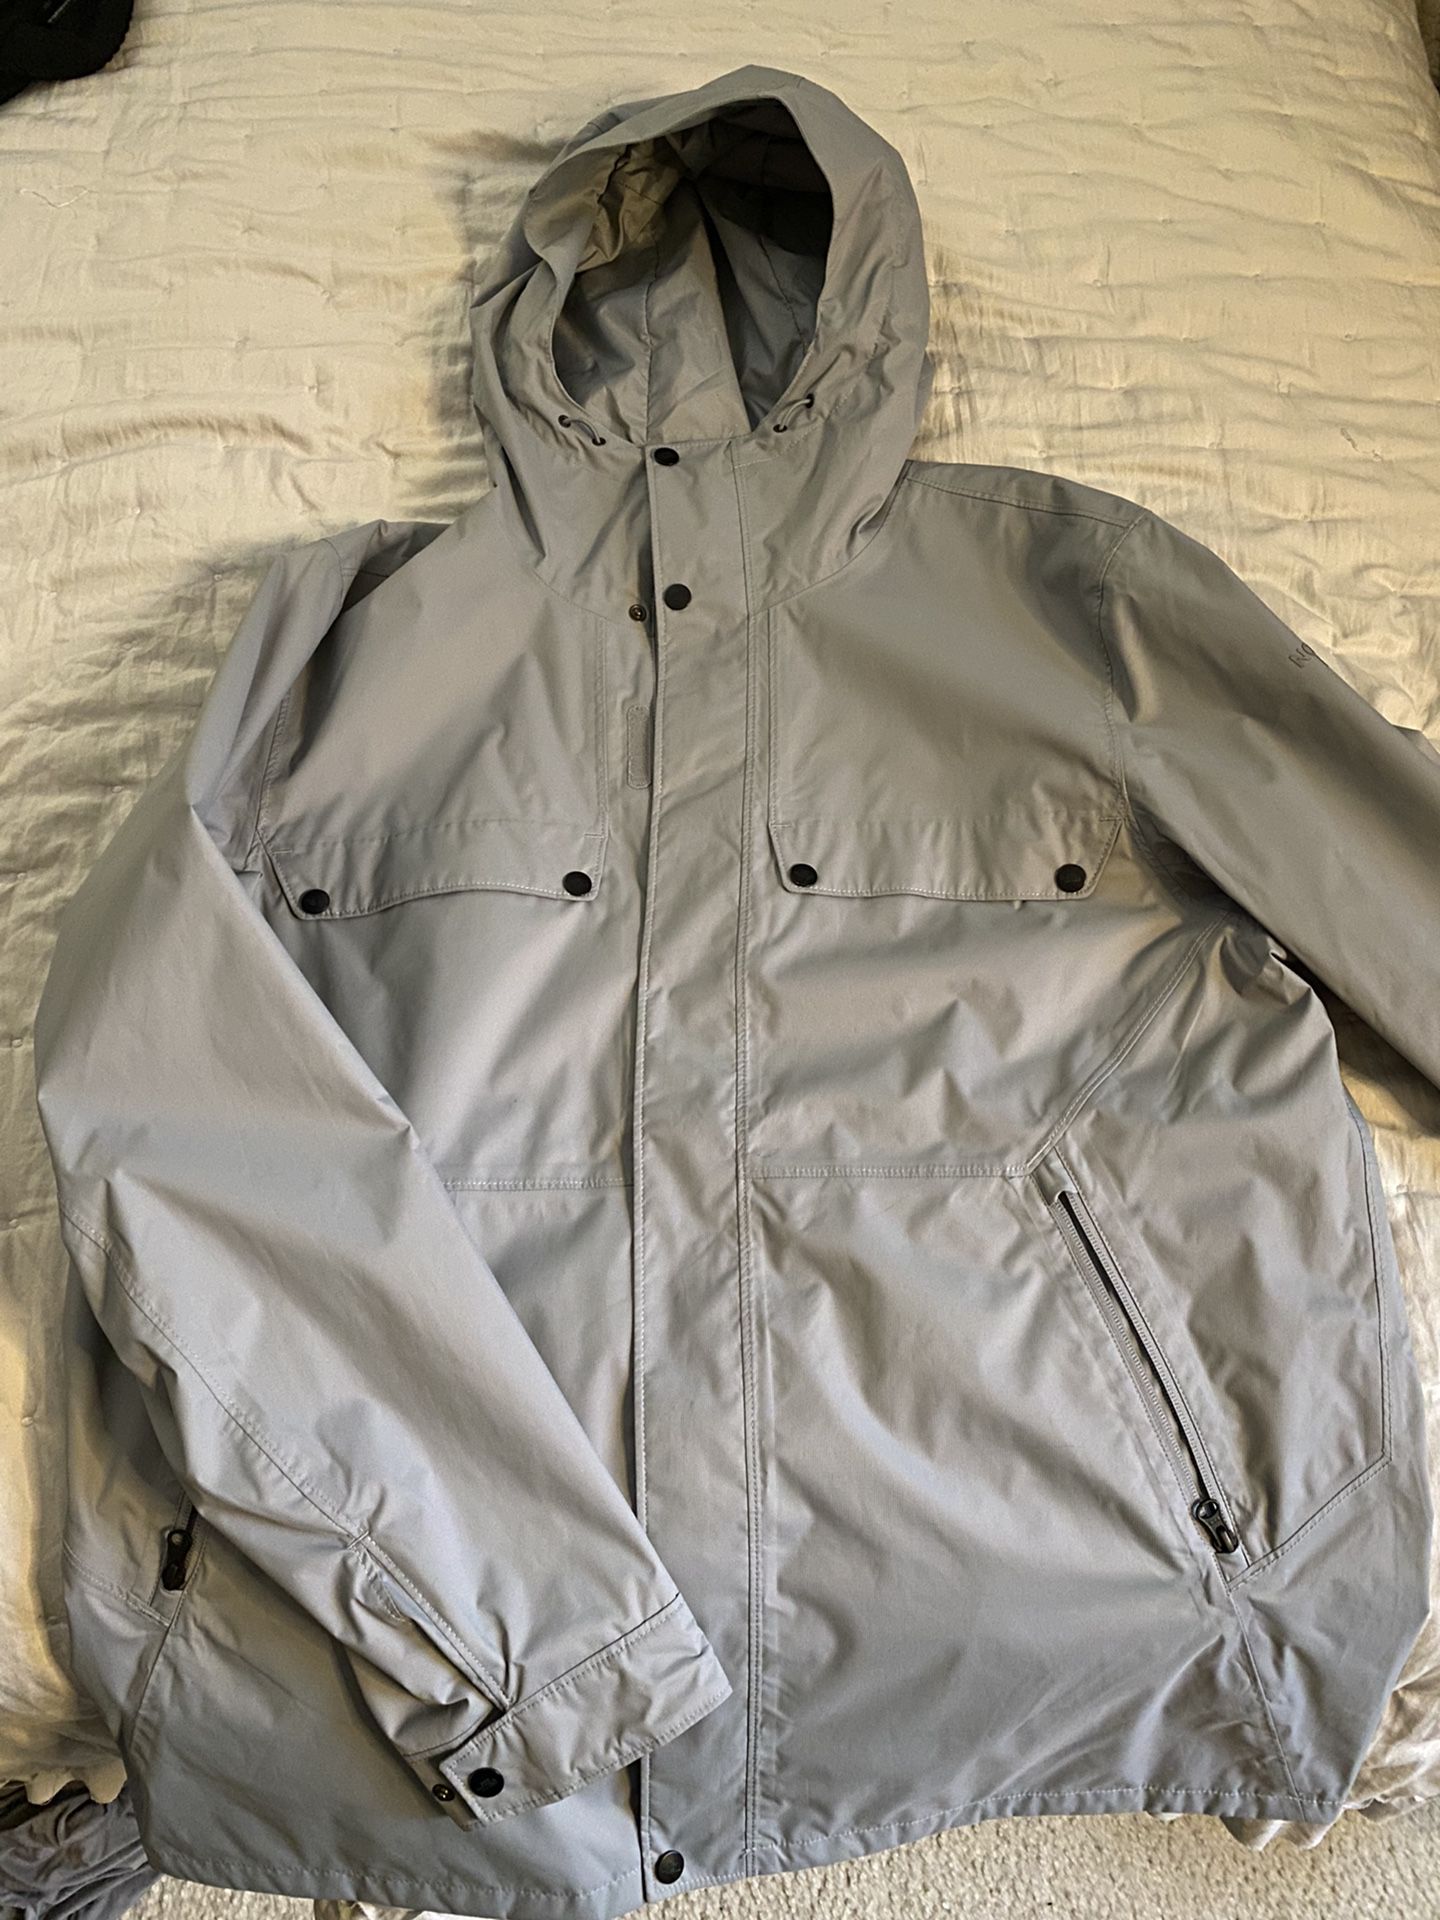 NorthFace Jacket/ Coat